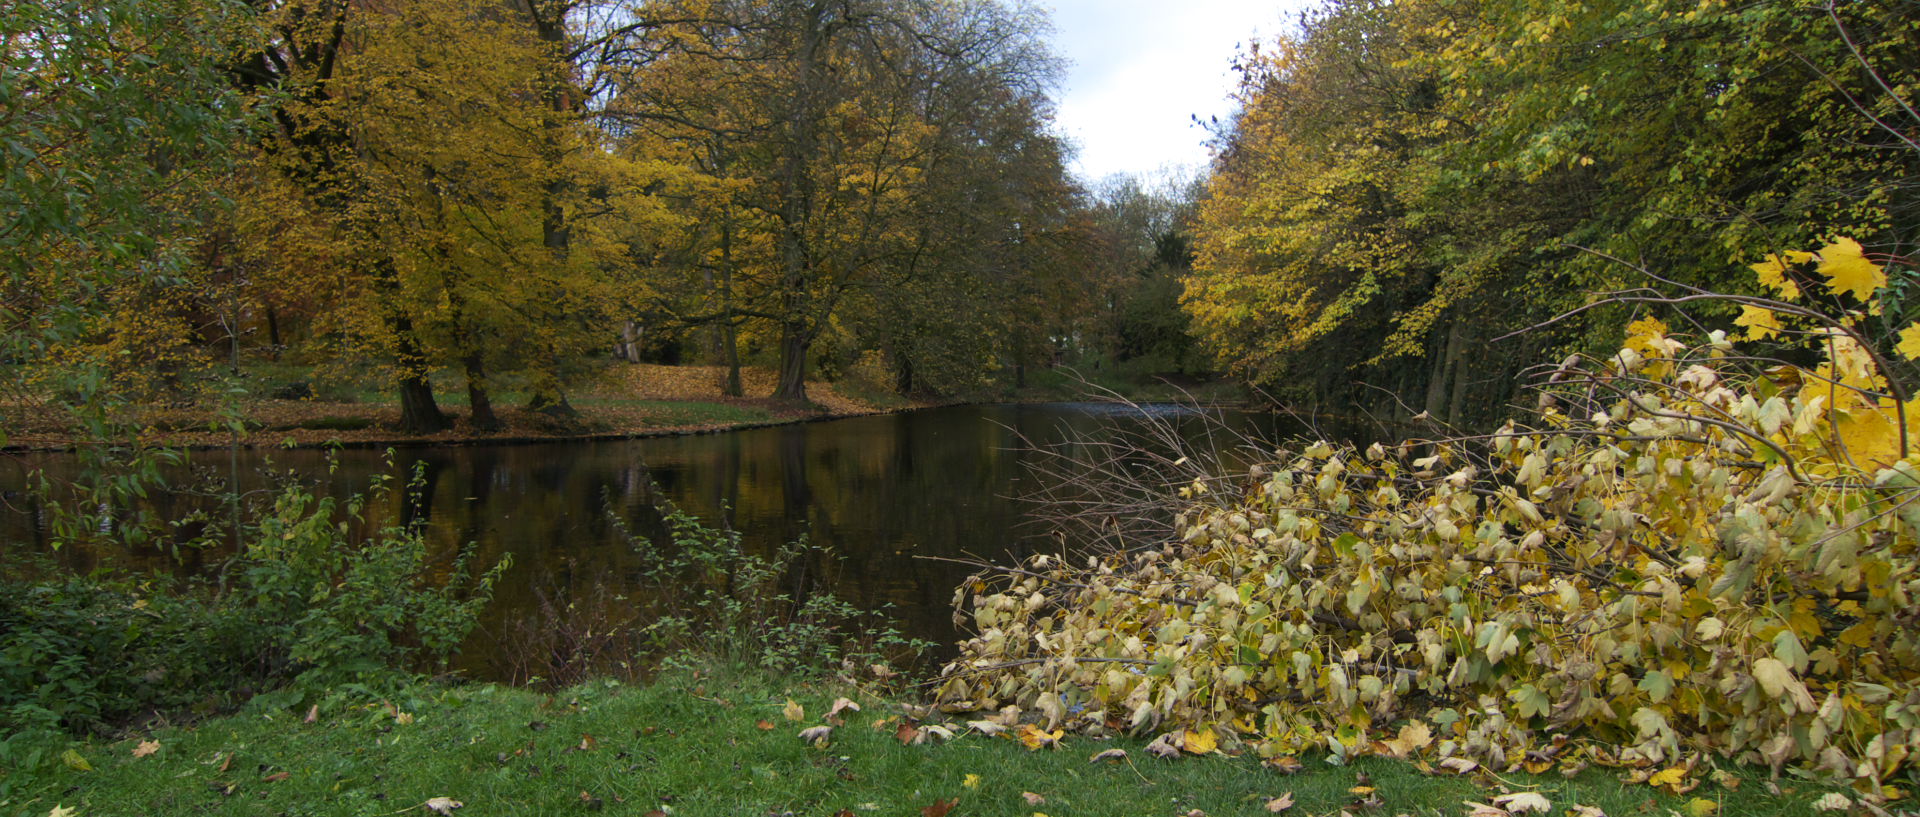 Samedi 8 novembre 2008, parc de la citadelle, à Lille.